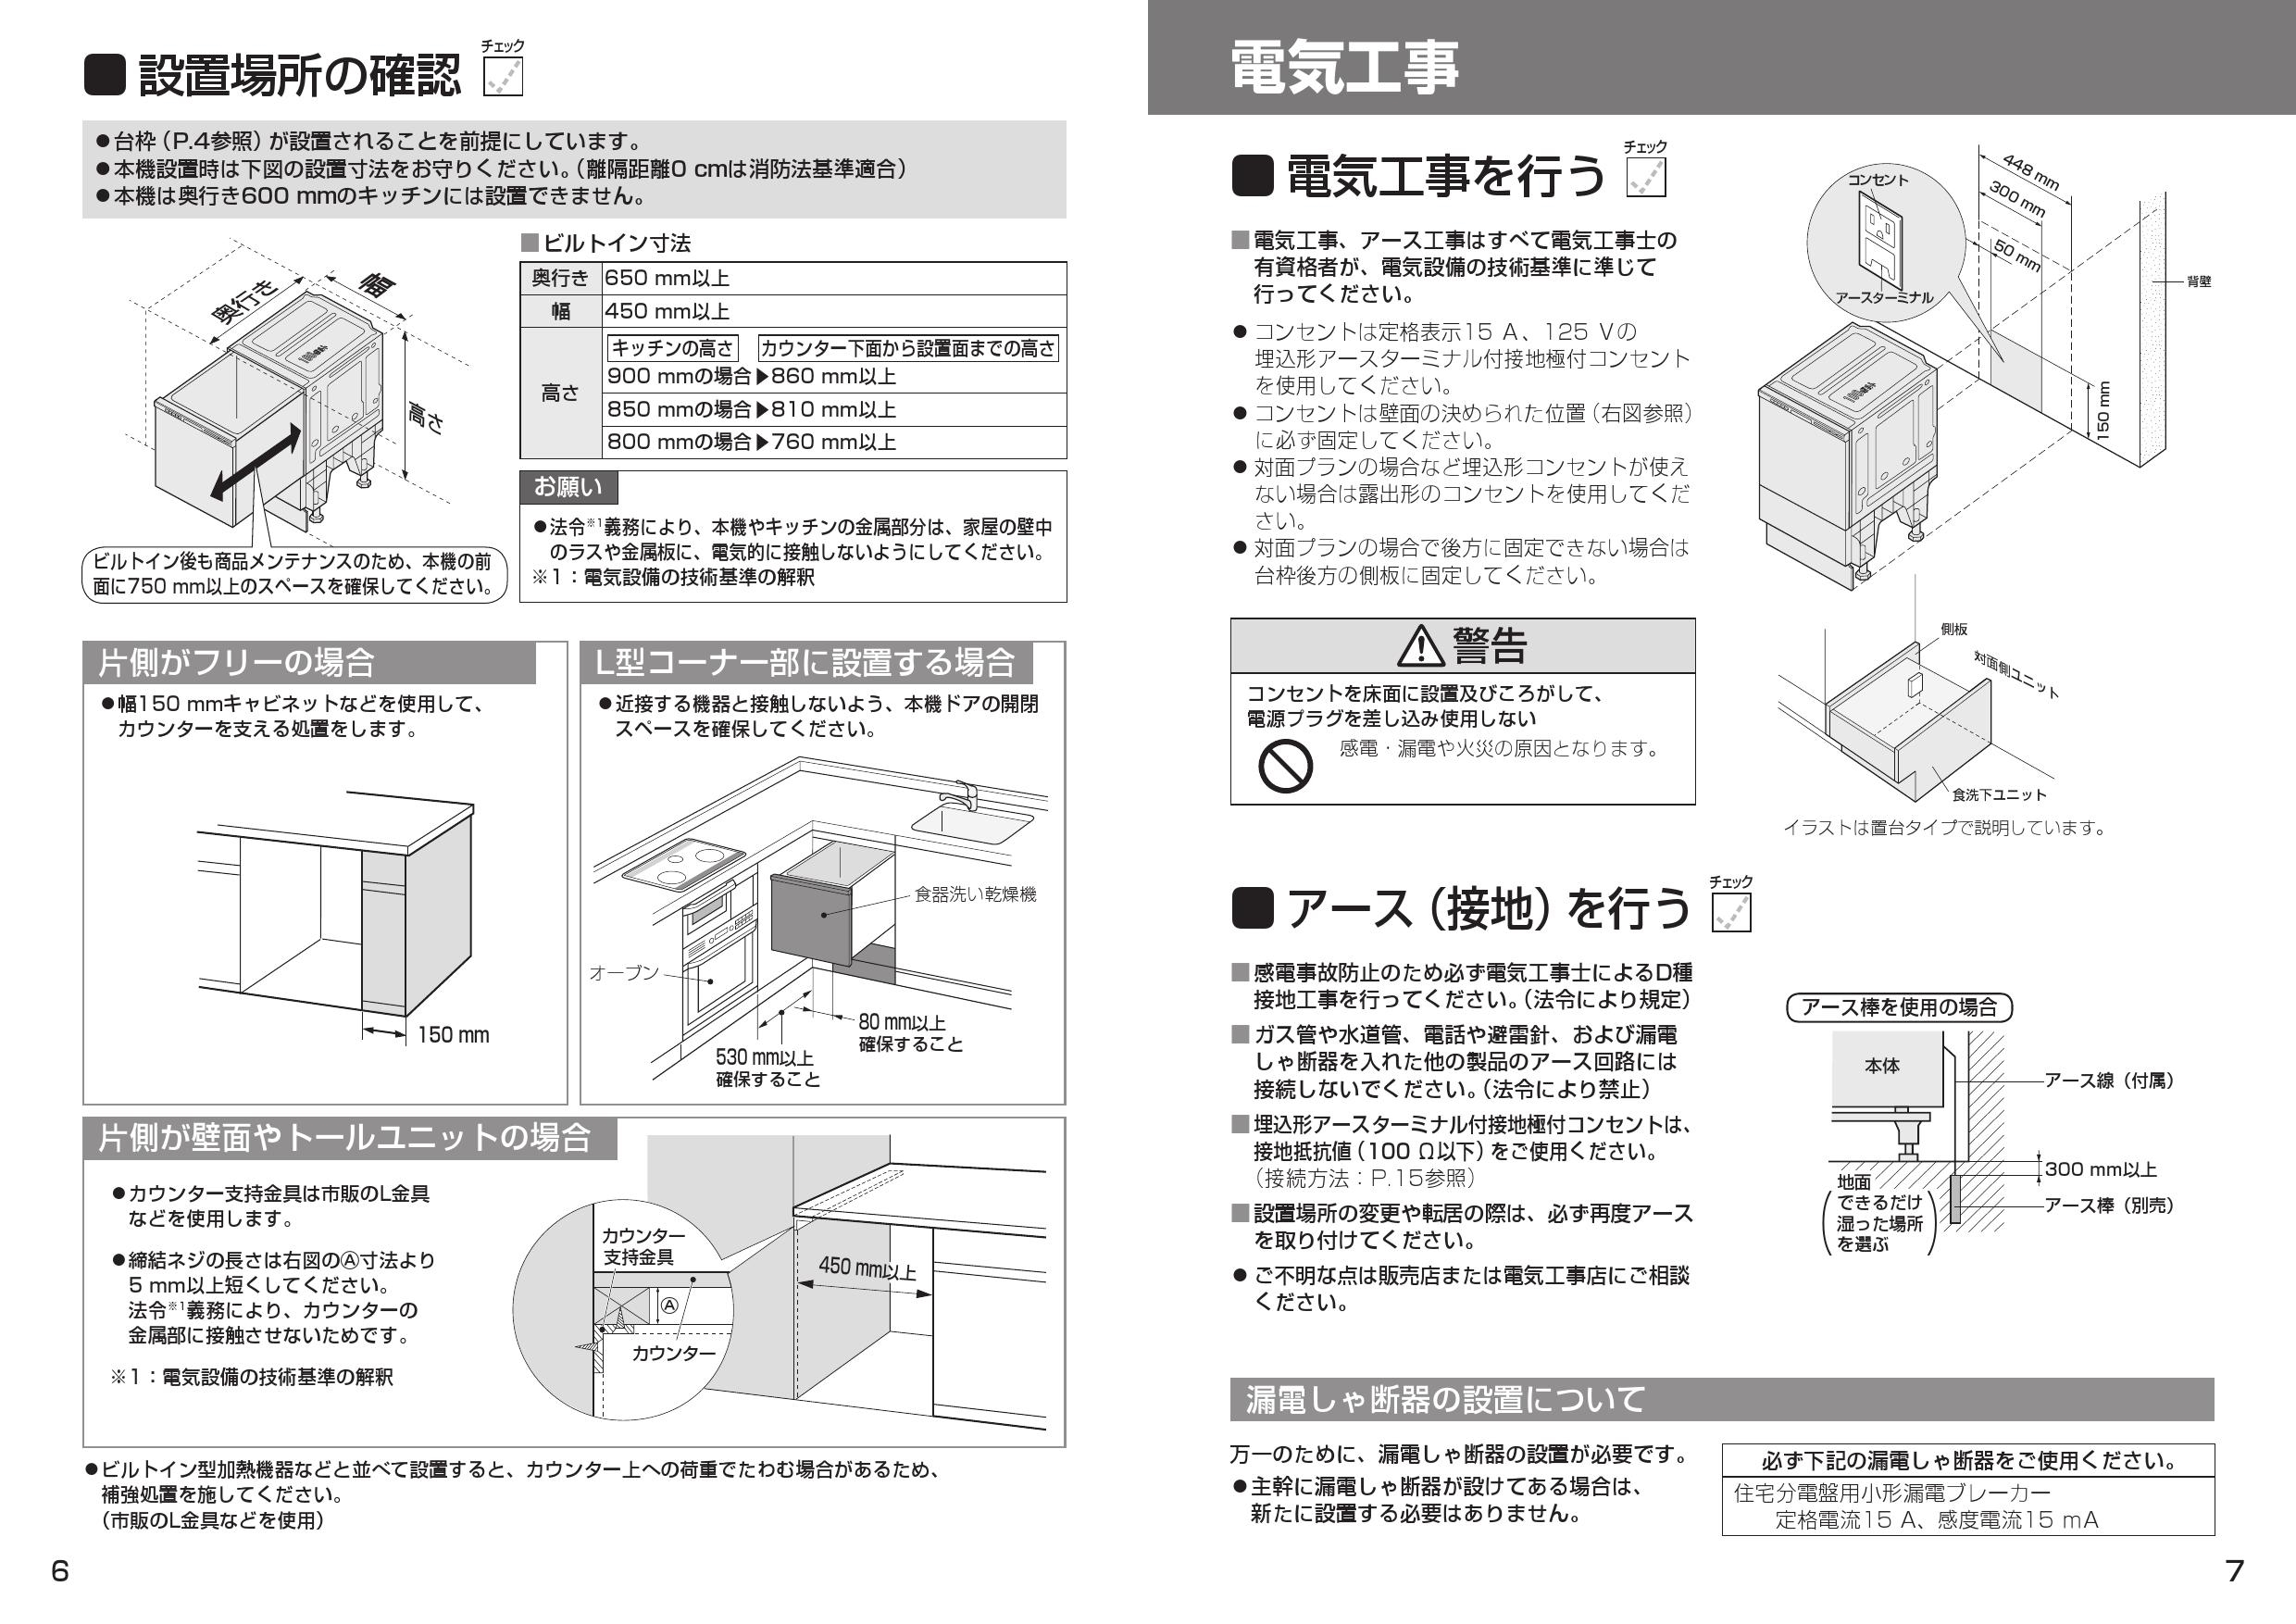 うのにもお得な情報満載！ 家電と住宅設備のジュプロR9シリーズ 食器洗い乾燥機 ミドルタイプ パナソニック NP-45RS9S ドアパネル型 